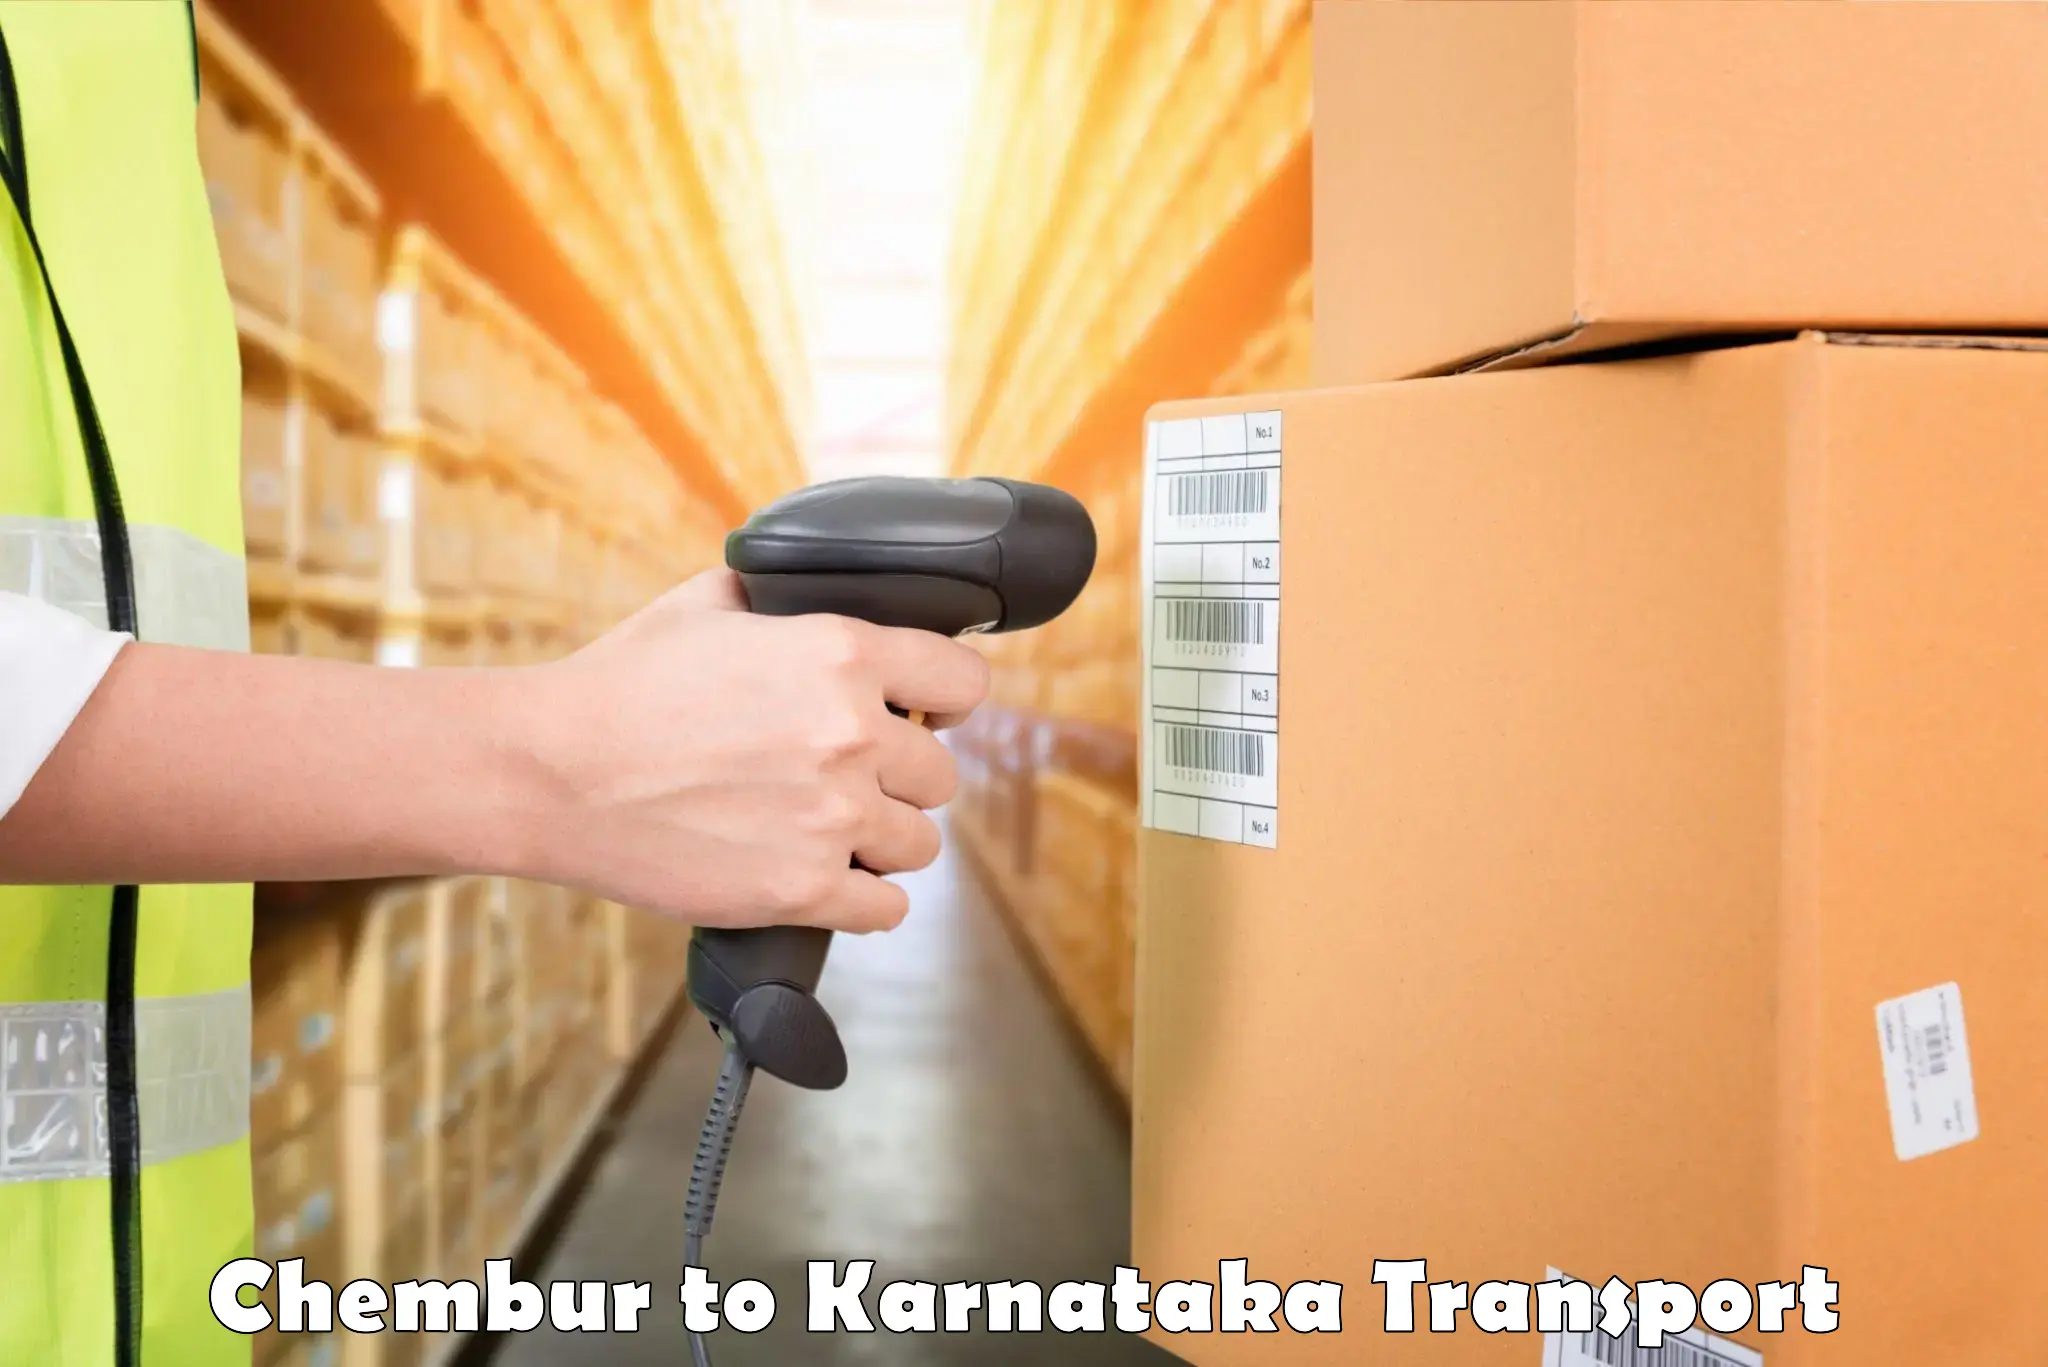 Furniture transport service in Chembur to Kolar